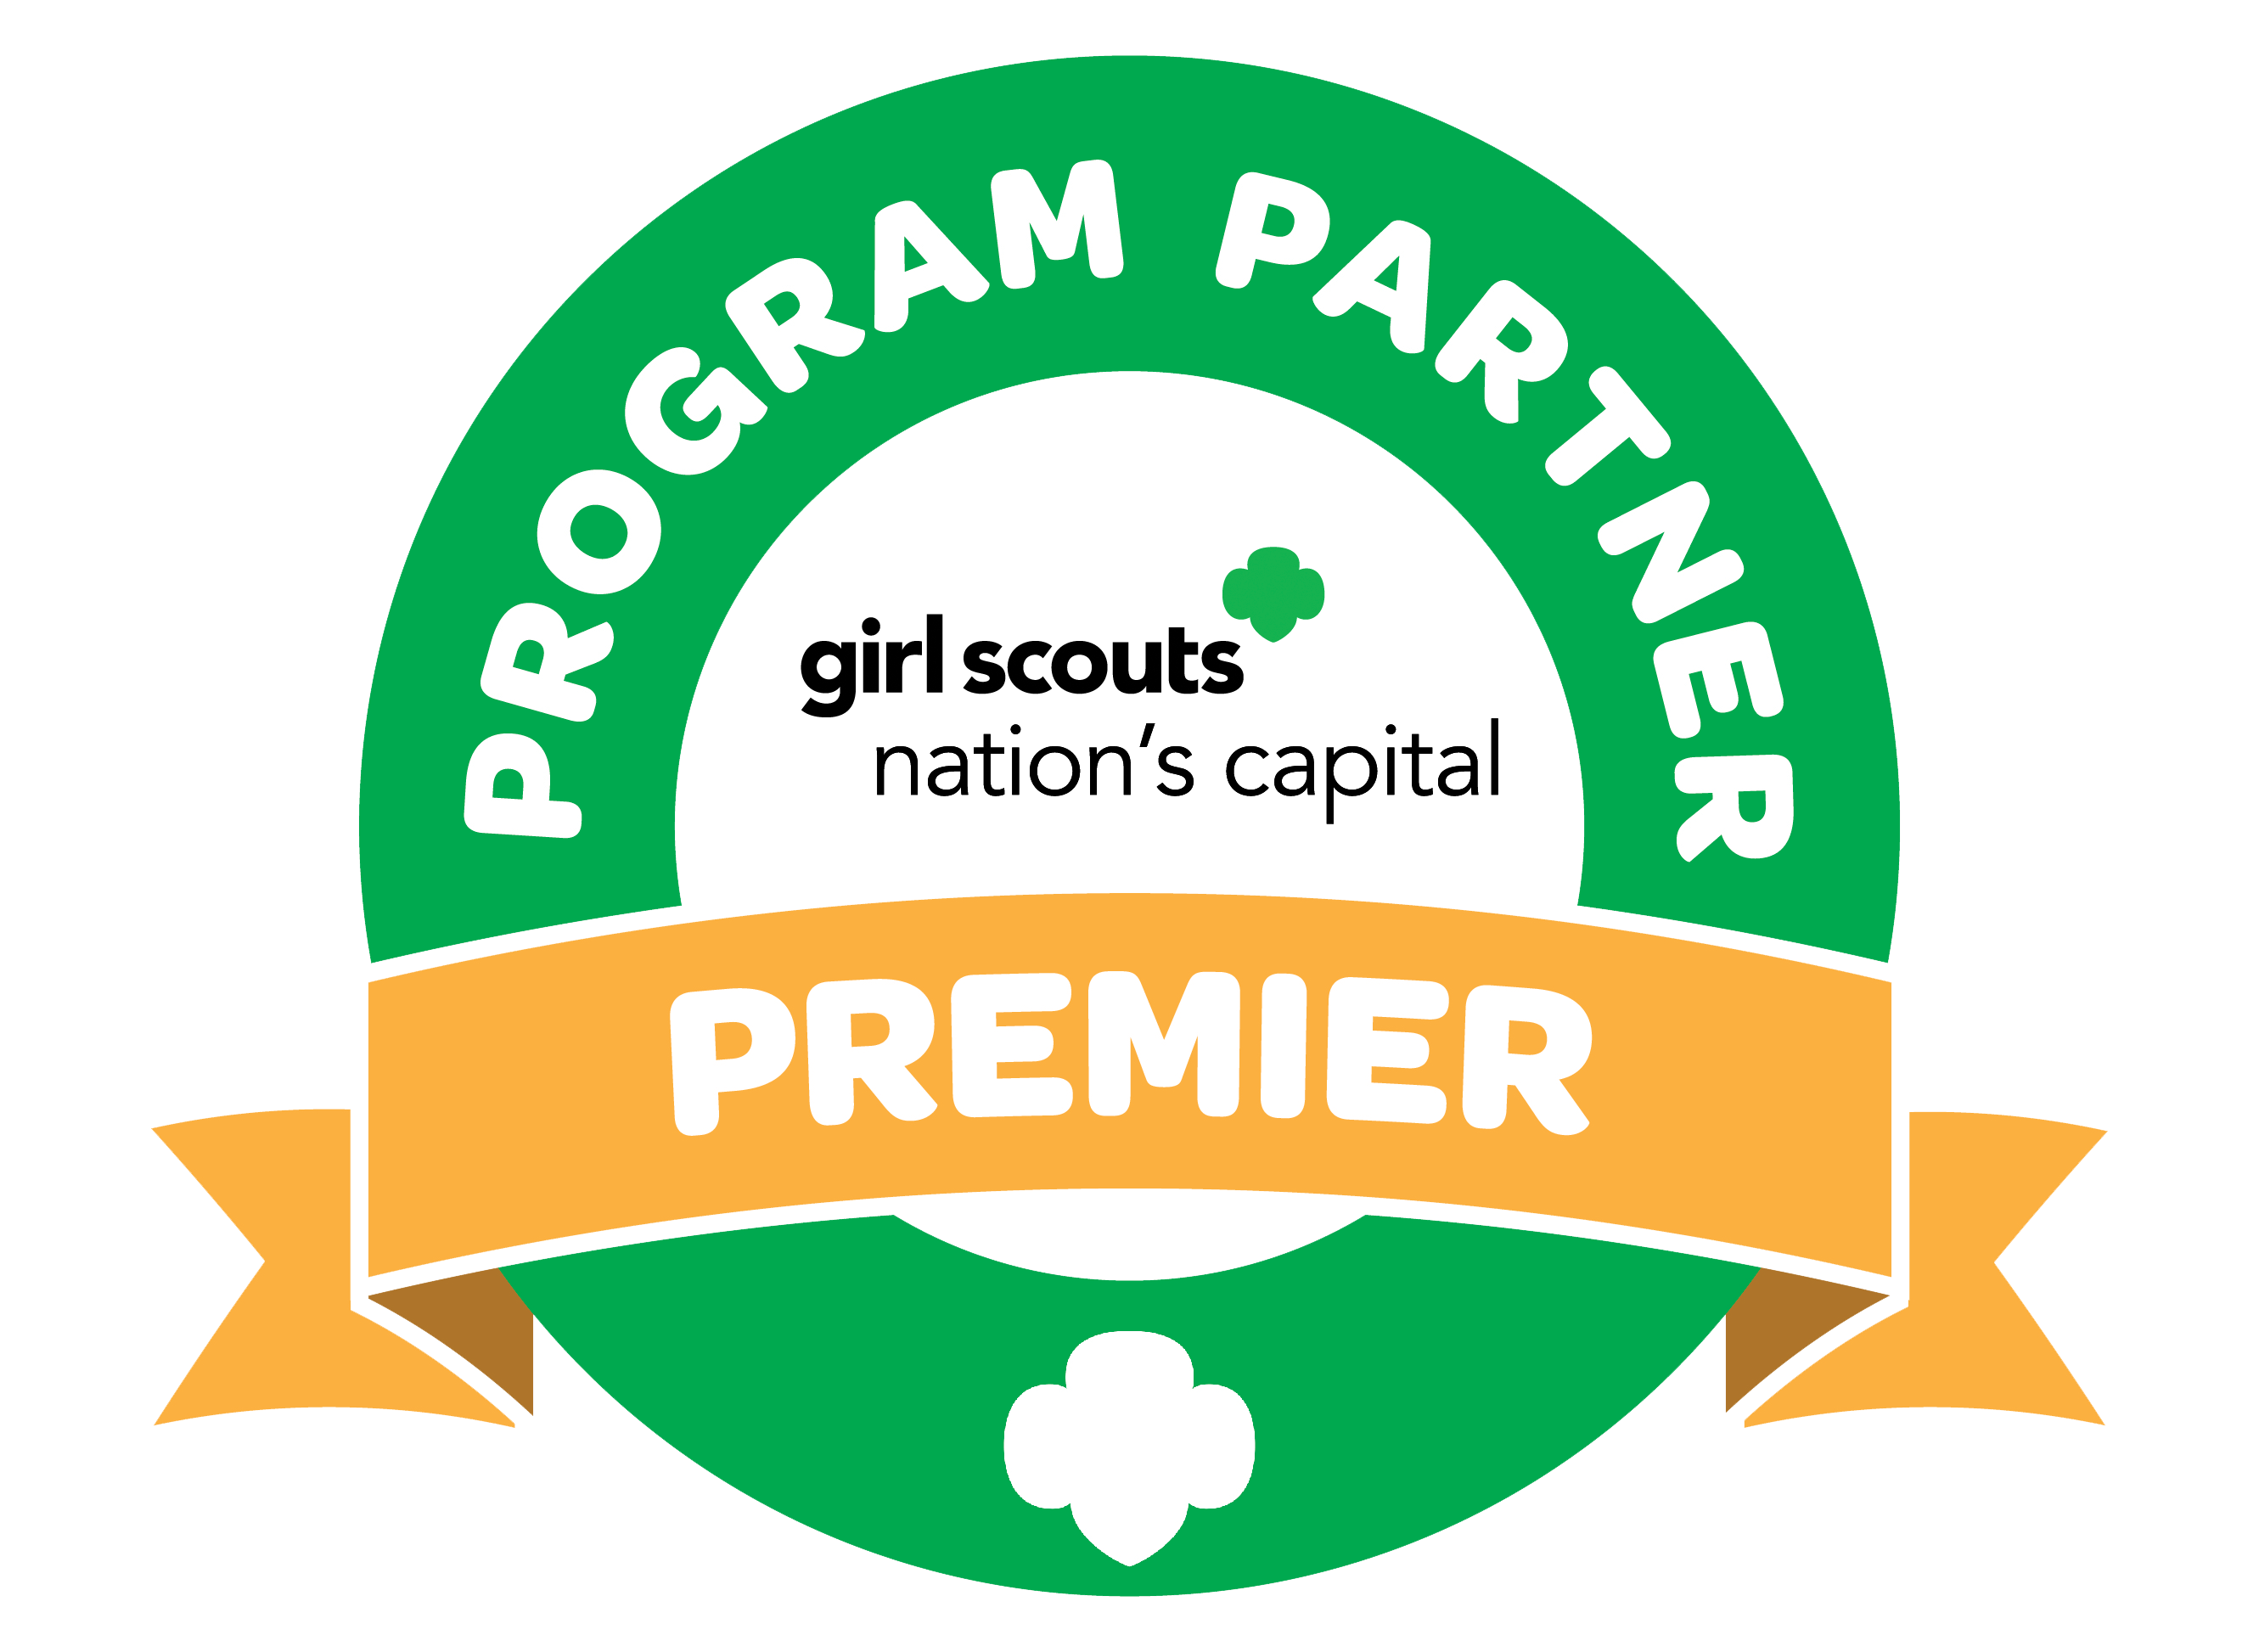 Girl Scout premier program partner logo